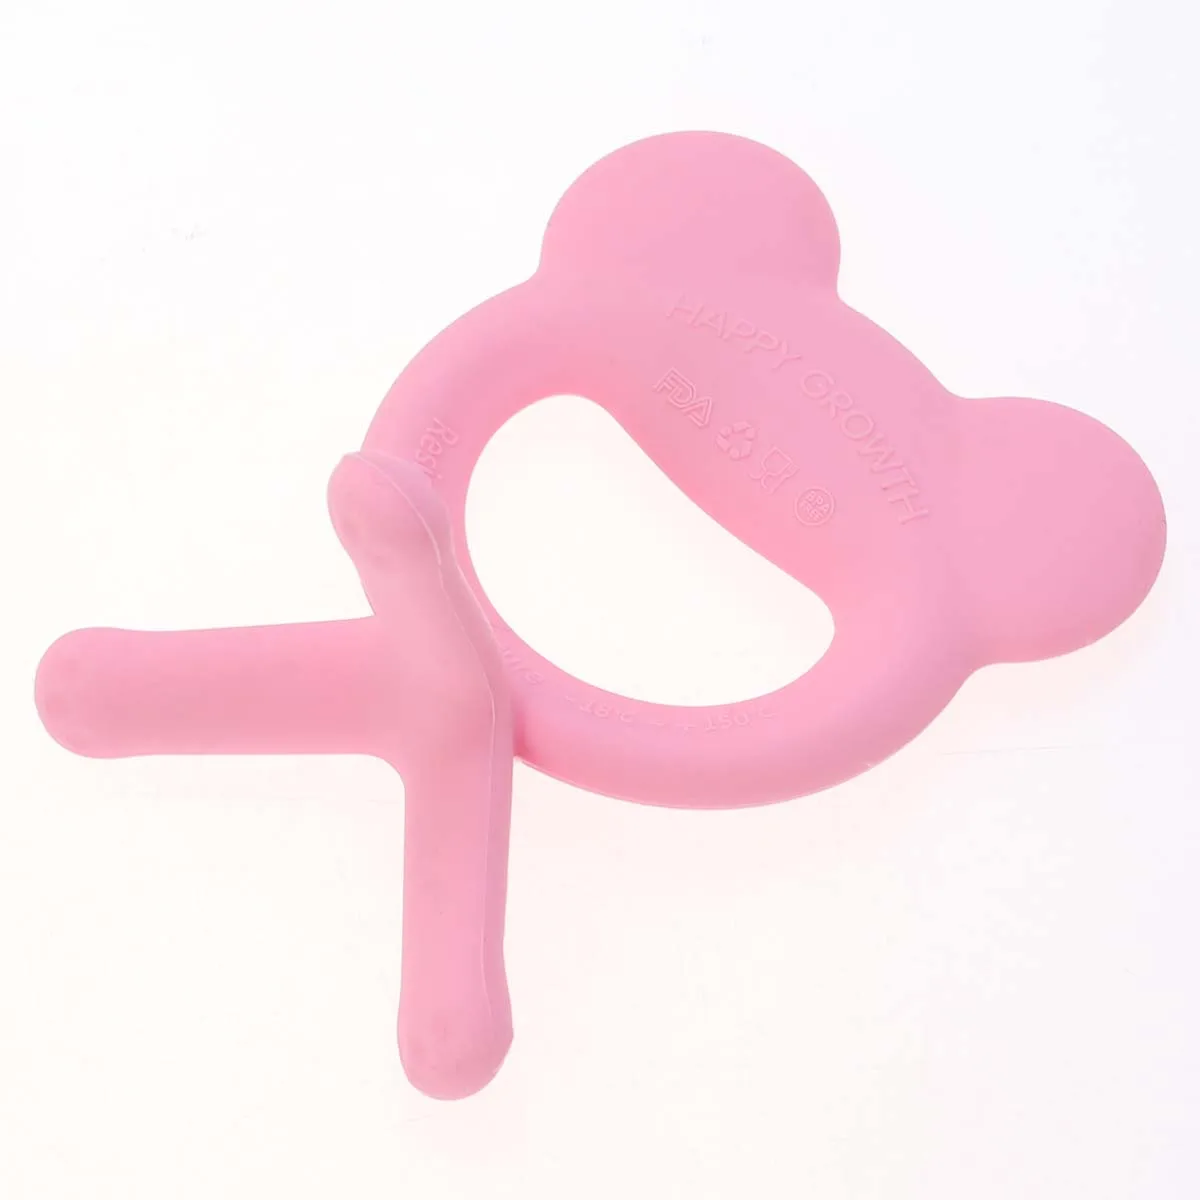 2 шт. Boilable прорезывания зубов игрушки высокое температура сопротивление силиконовые Милые Успокаивающая игрушка простая игрушка 9x7x4,5 см